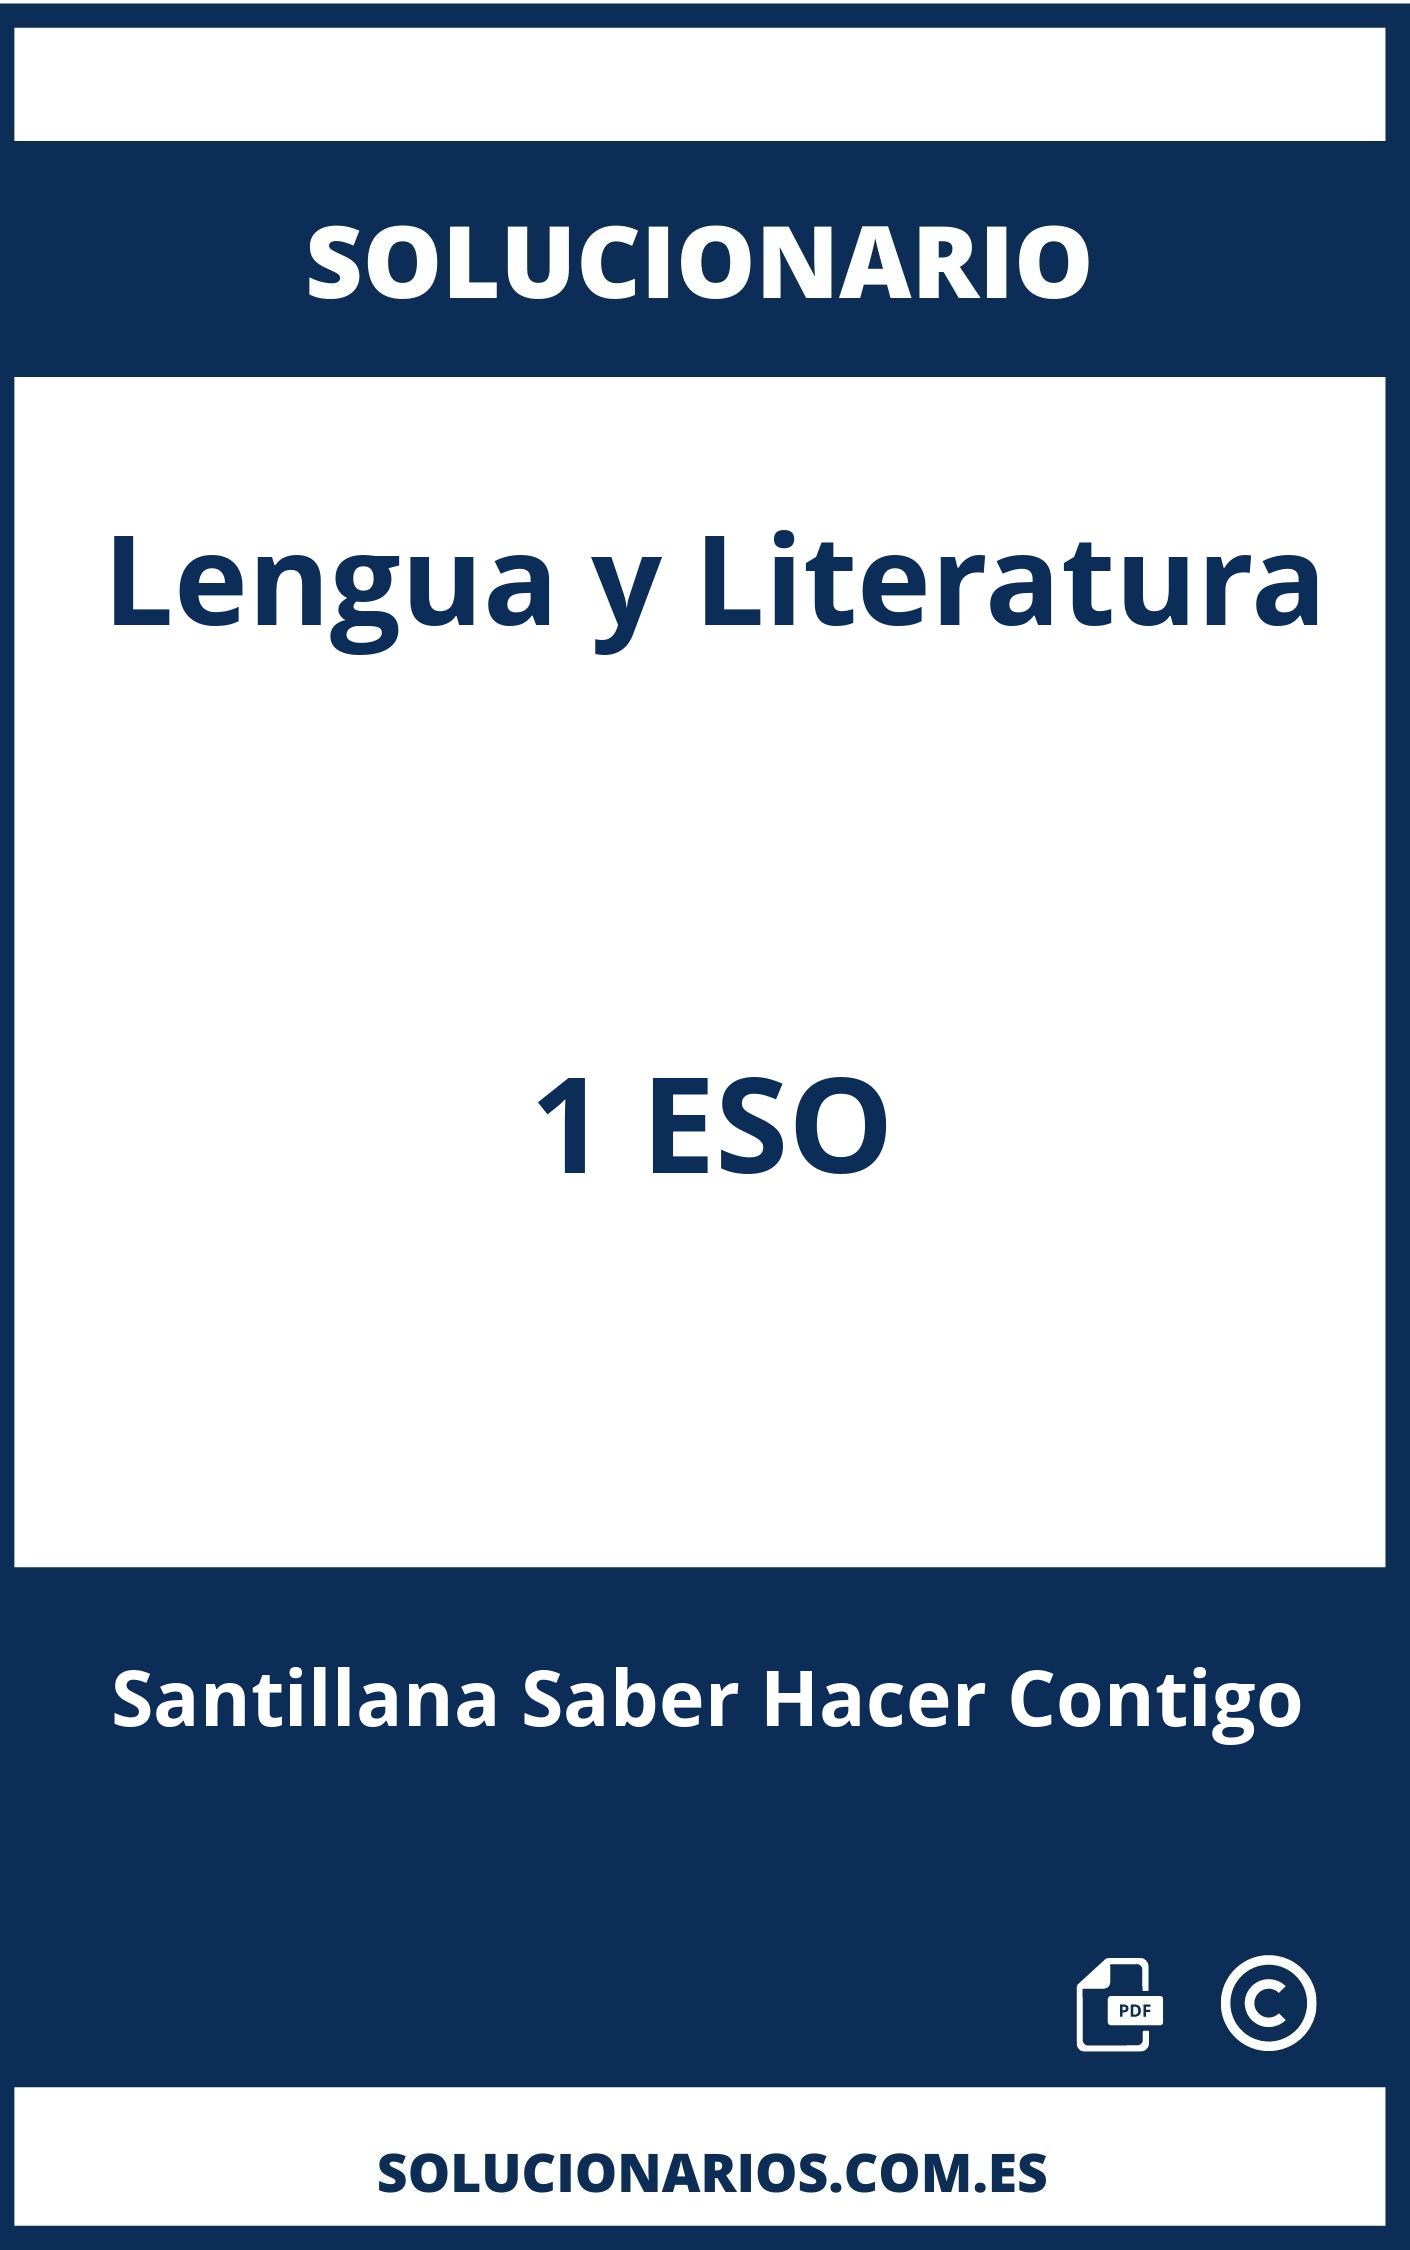 Solucionario Lengua y Literatura 1 ESO Santillana Saber Hacer Contigo